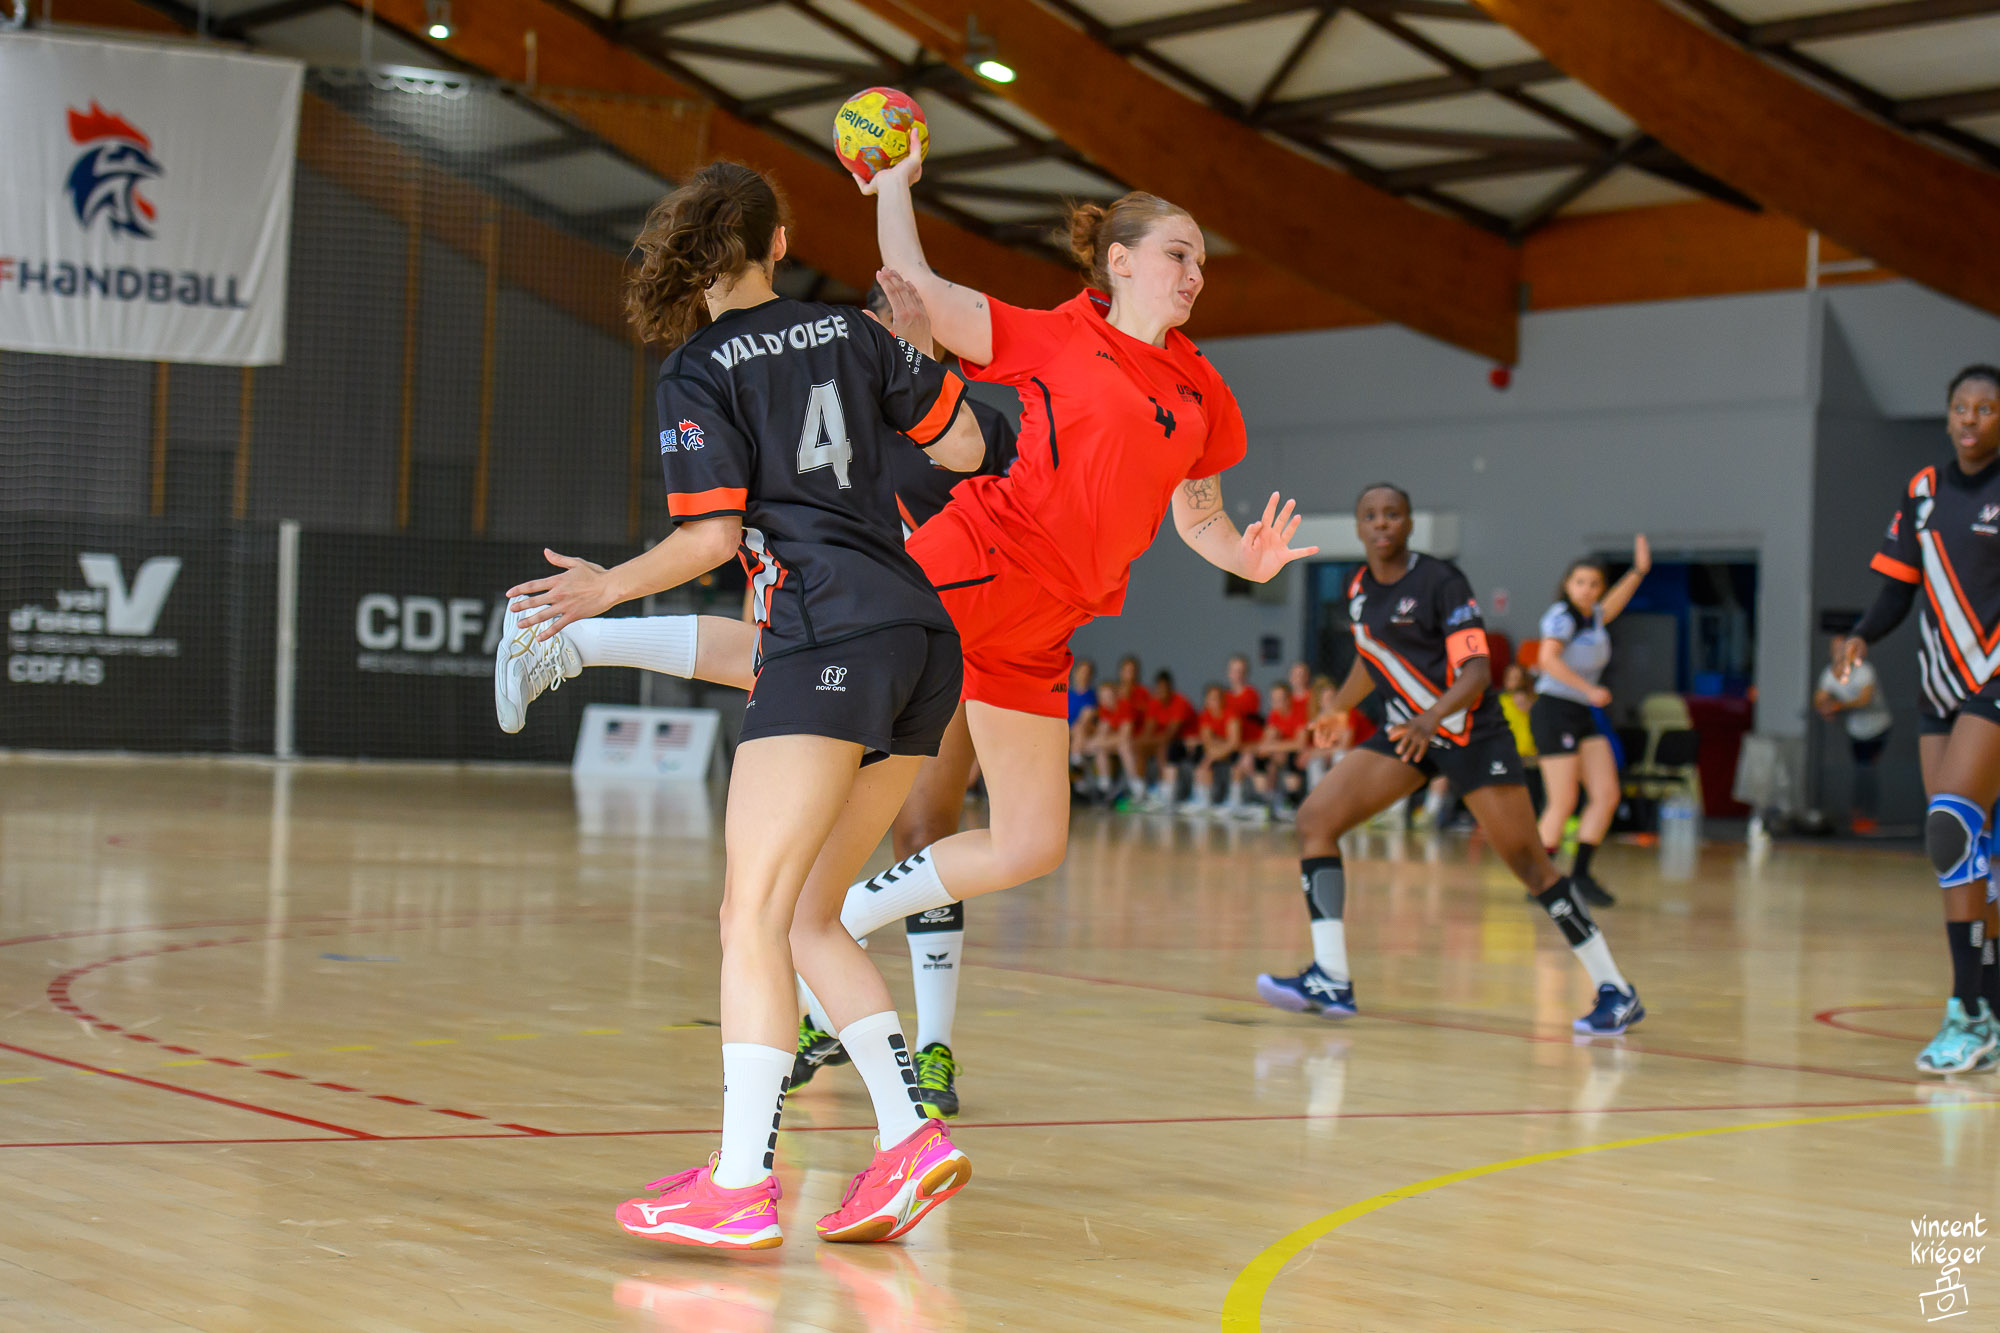 Rencontre féminine de handball – Sélection du Val d’Oise VS Sélection nationale des États-Unis